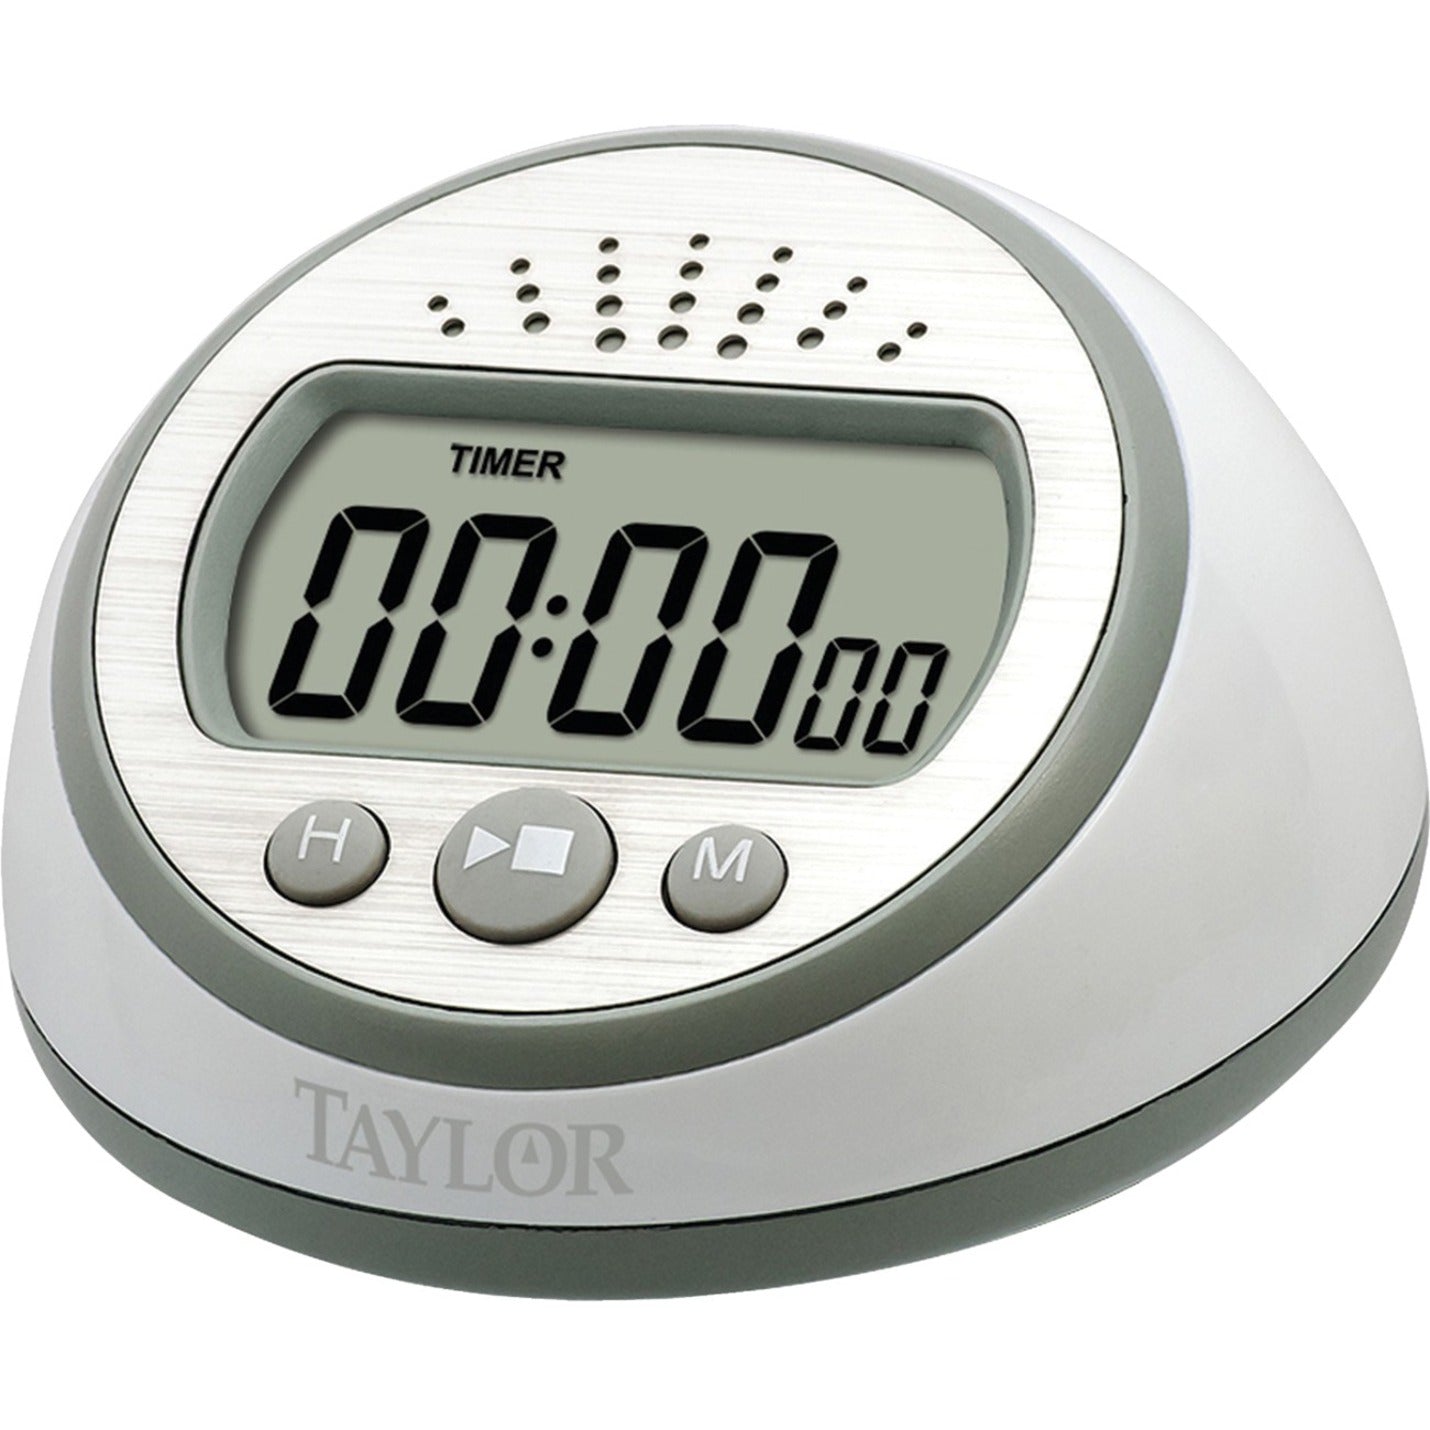 Taylor 5873 Super-Loud Digital Timer - 1 Day, For Kitchen